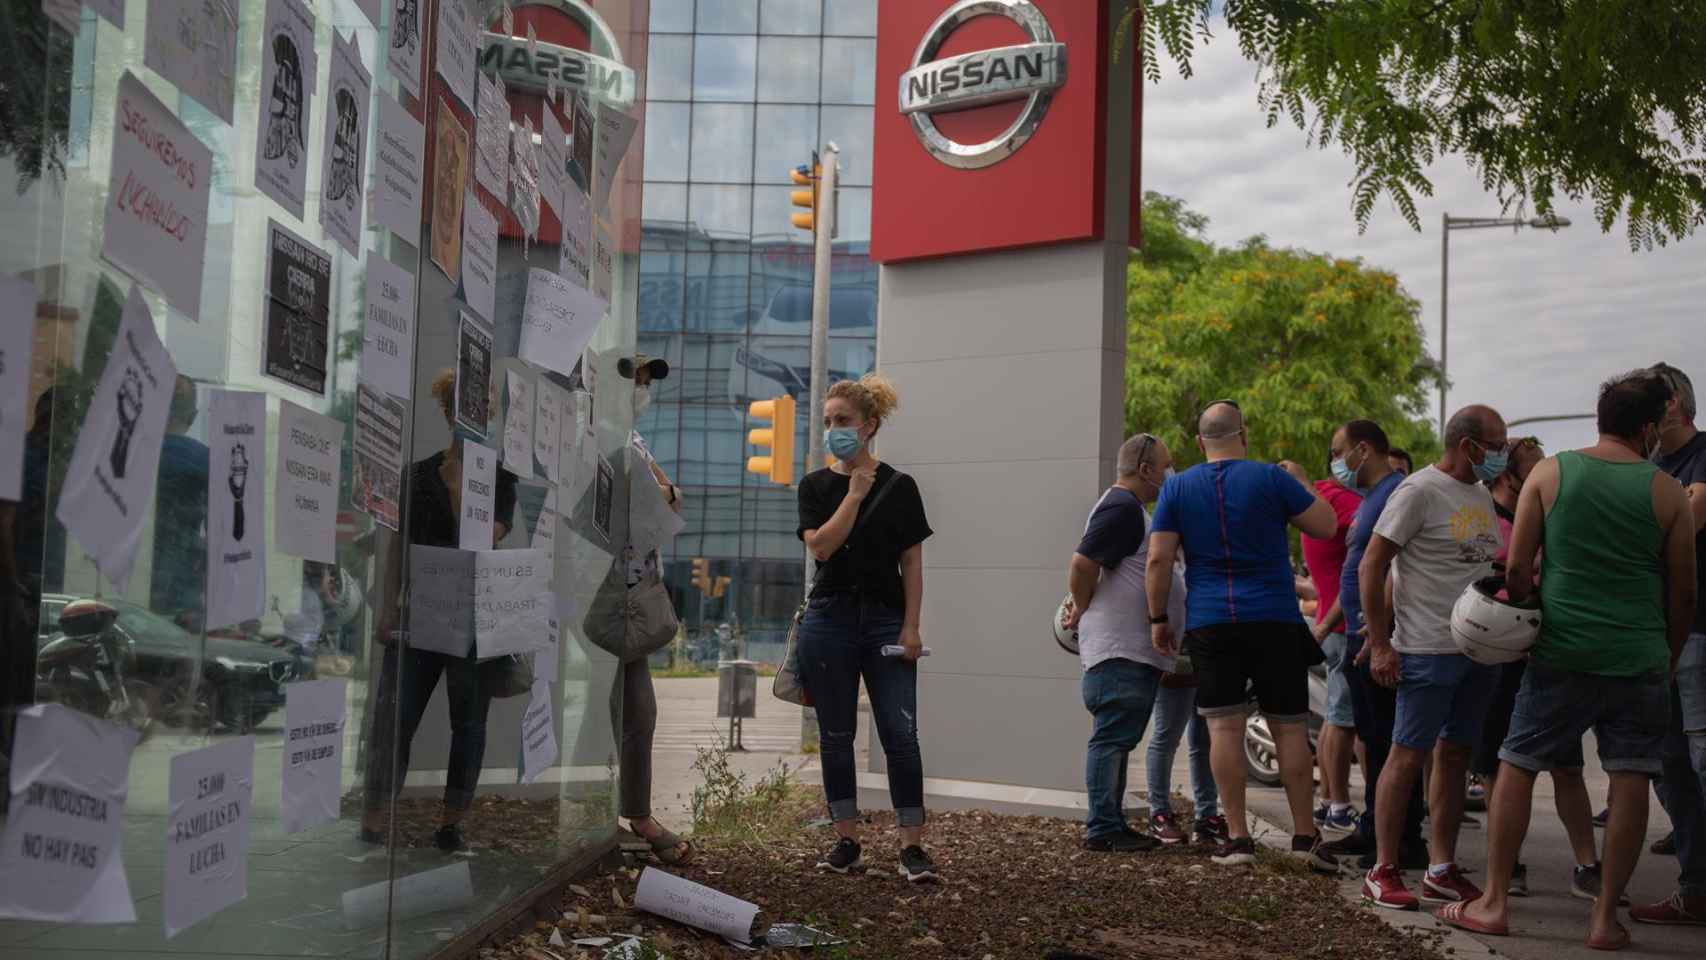 Trabajadores de Nissan cuelgan carteles como signo de protesta en un corte realizado en la Gran Via de L’Hospital / David Zorrakino - EP